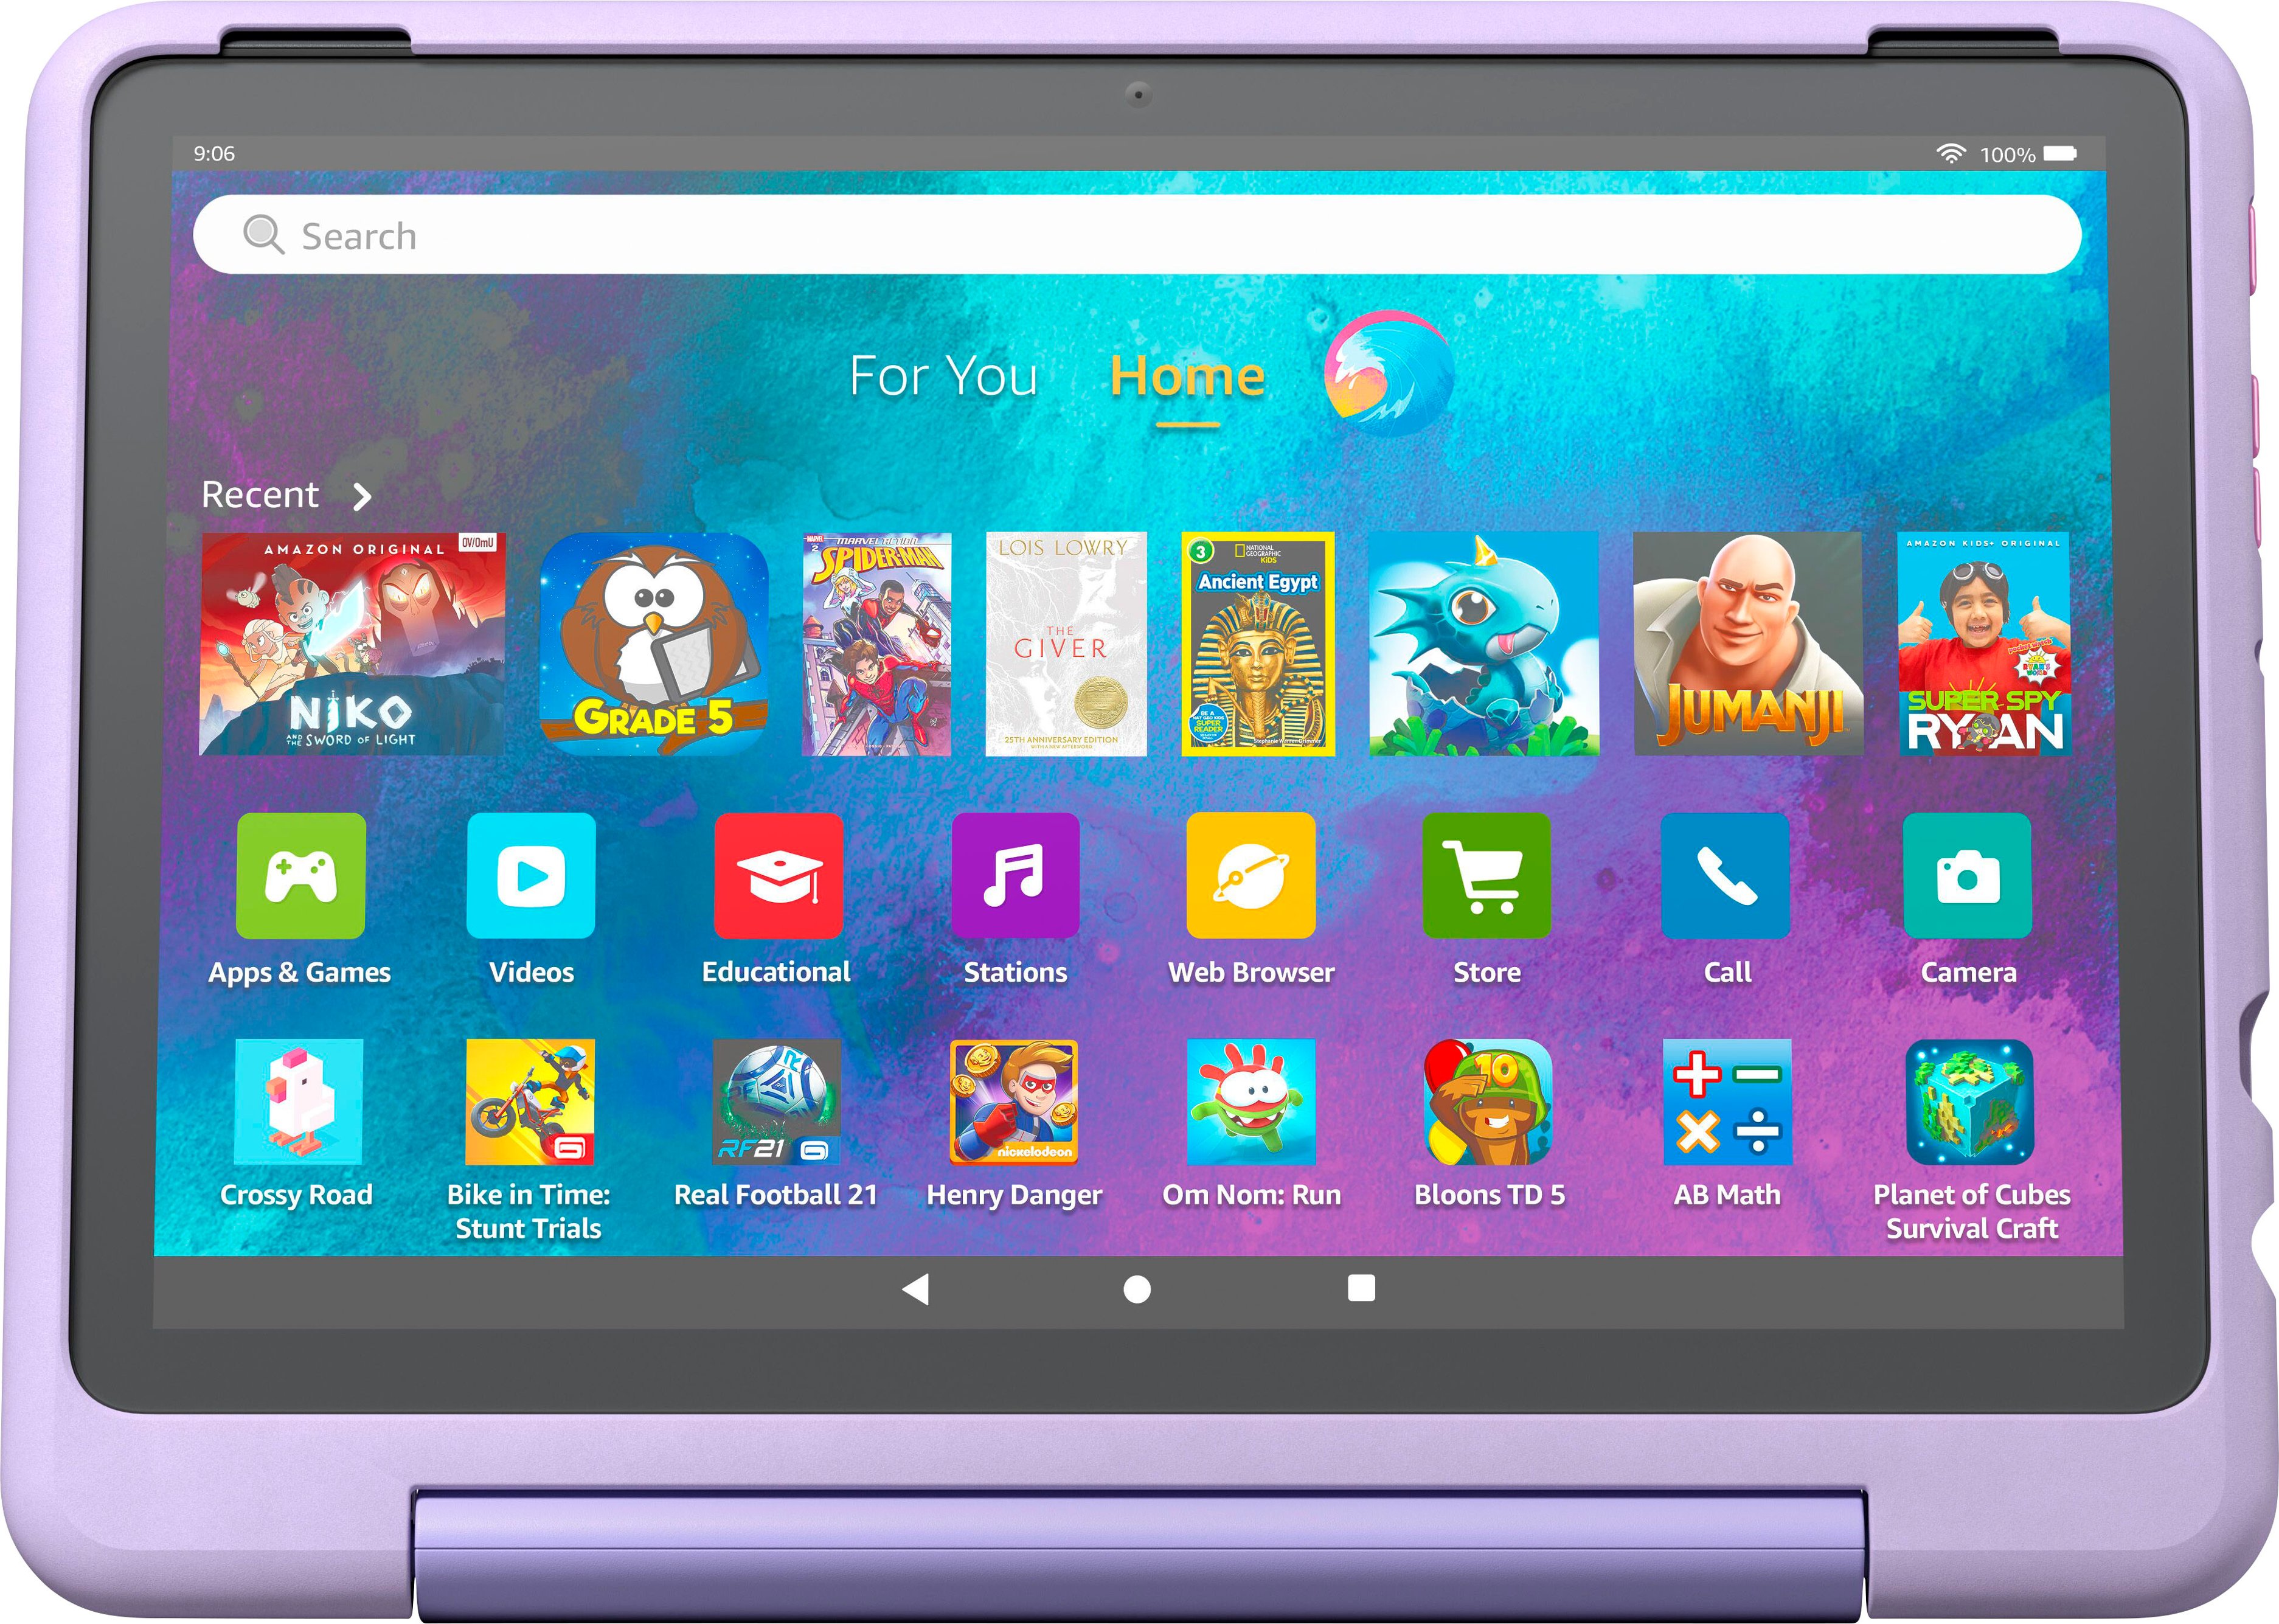 Fire HD 10 Kids Pro 10.1 Tablet (2023 Release) 32GB Happy